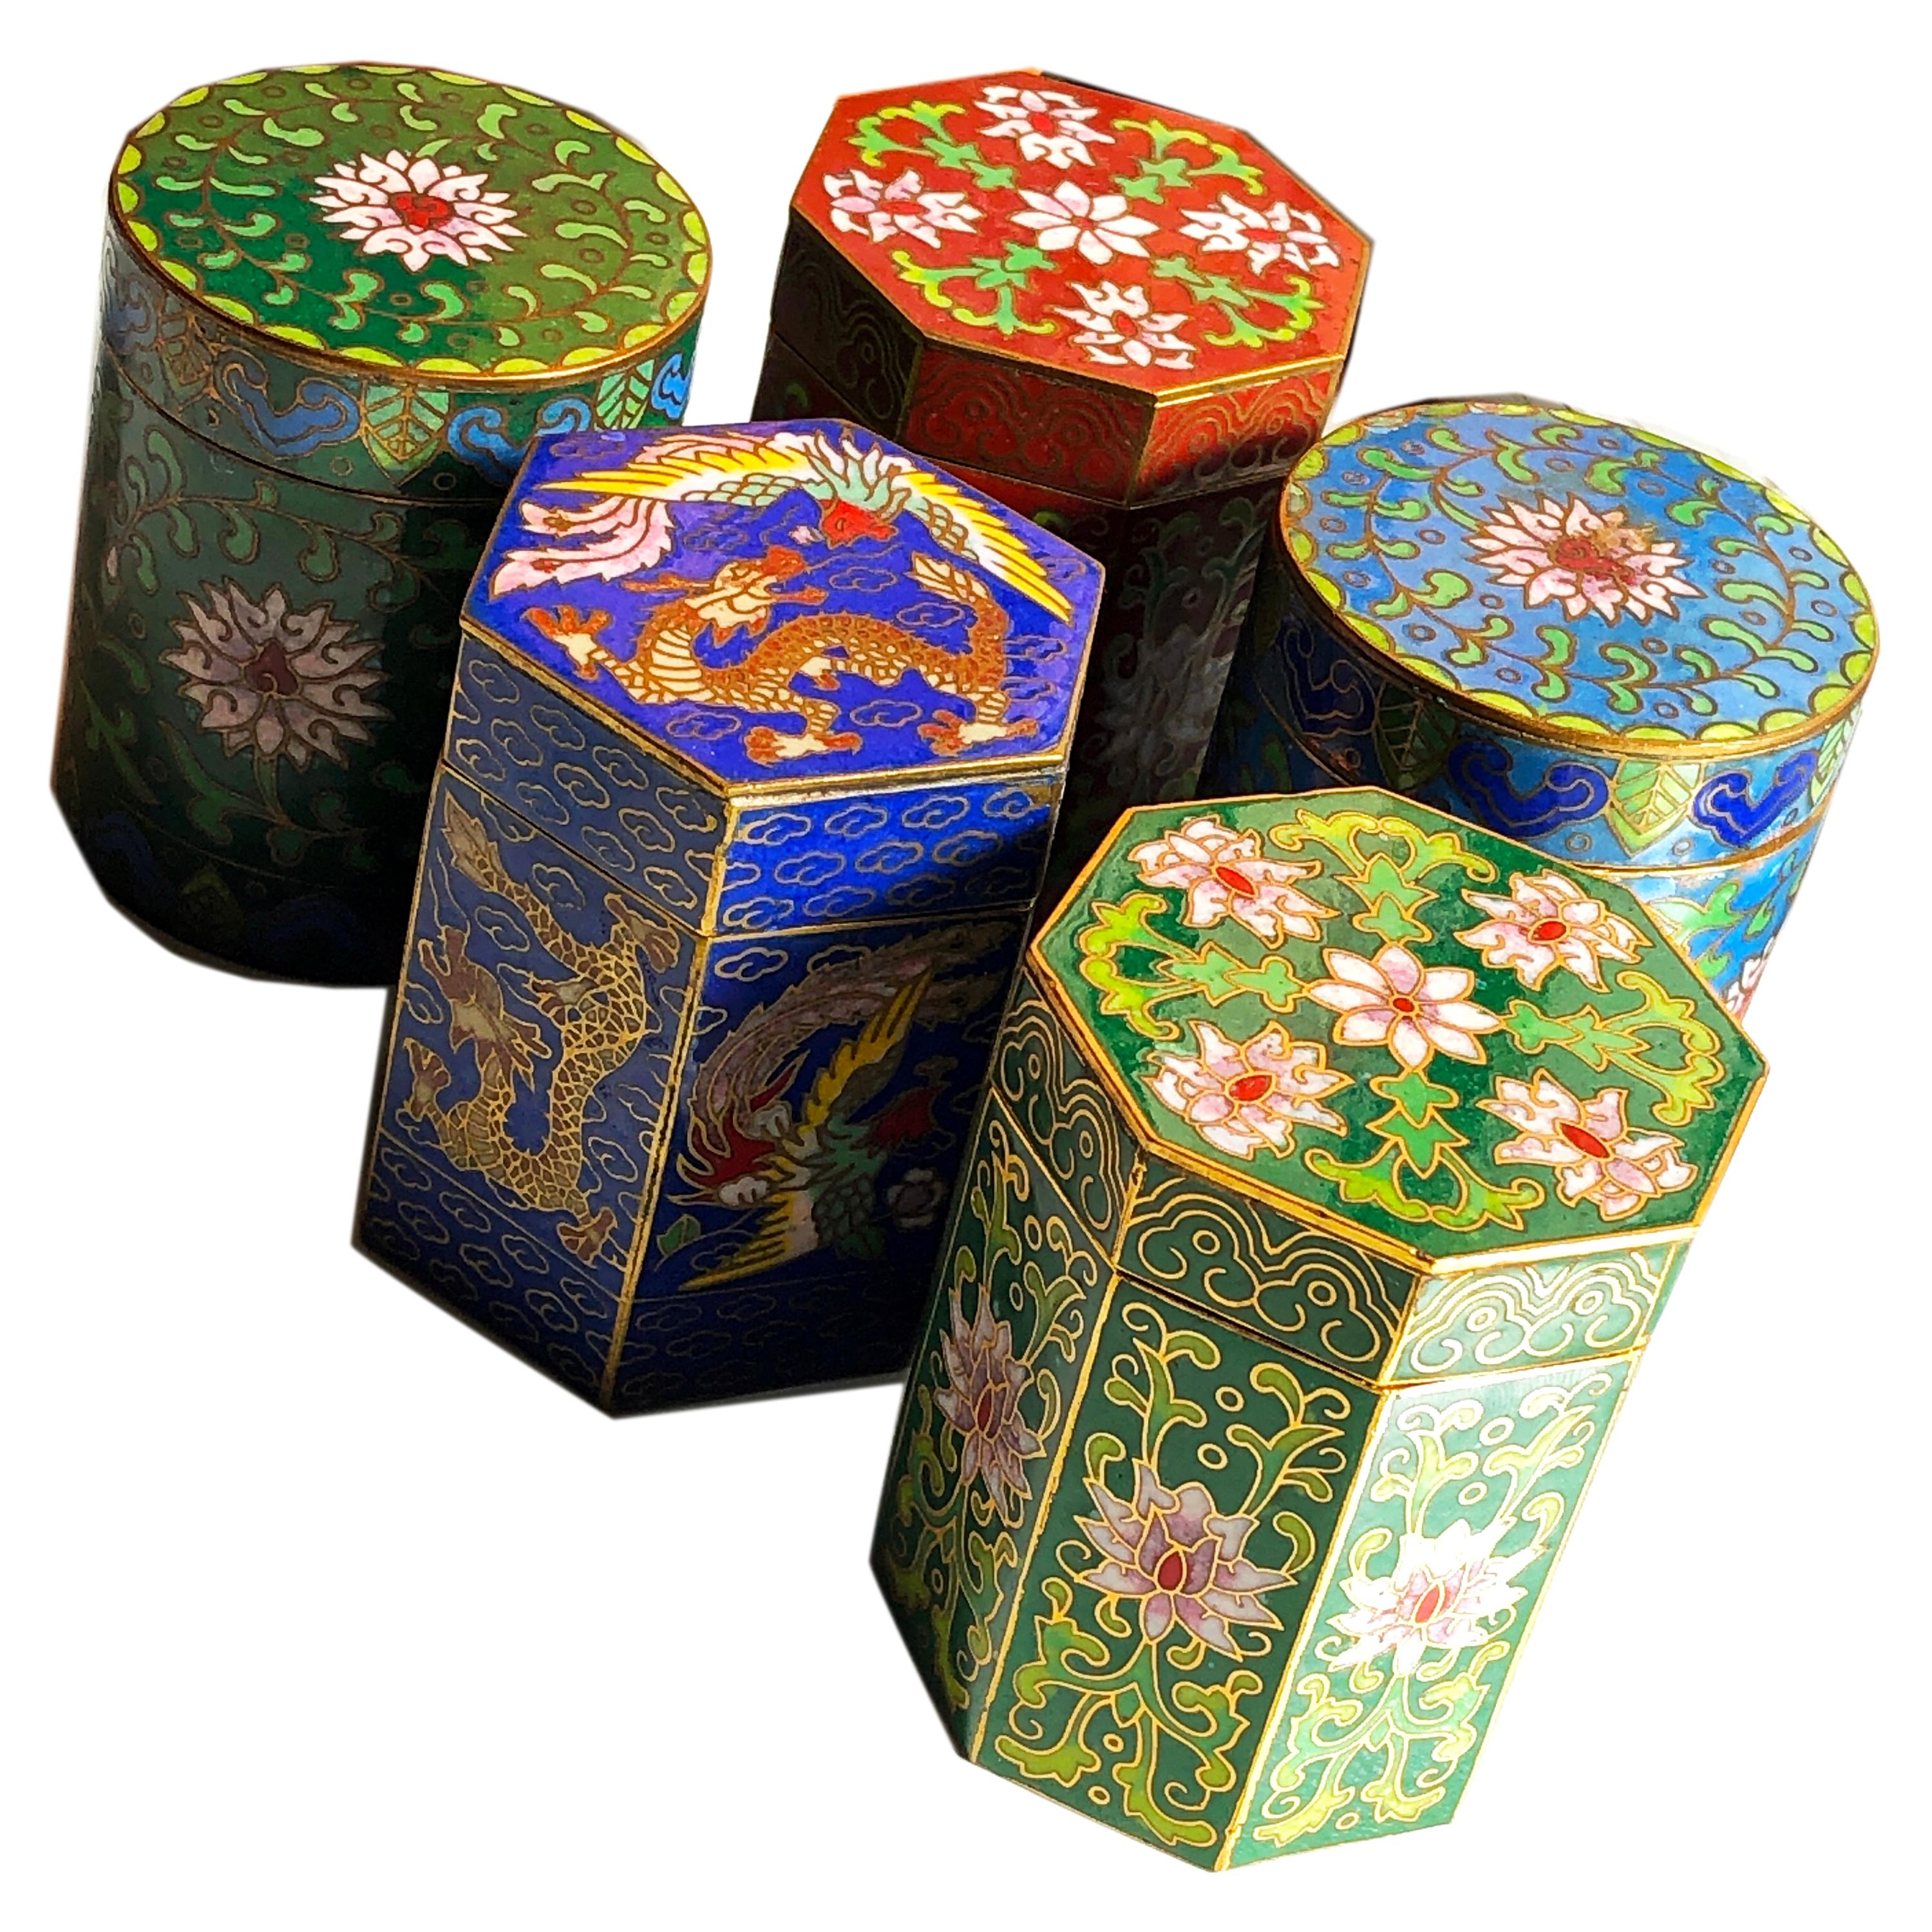 Circa 1949 Gu Yi Zhai Beijing Cloisonné Boxes Collection